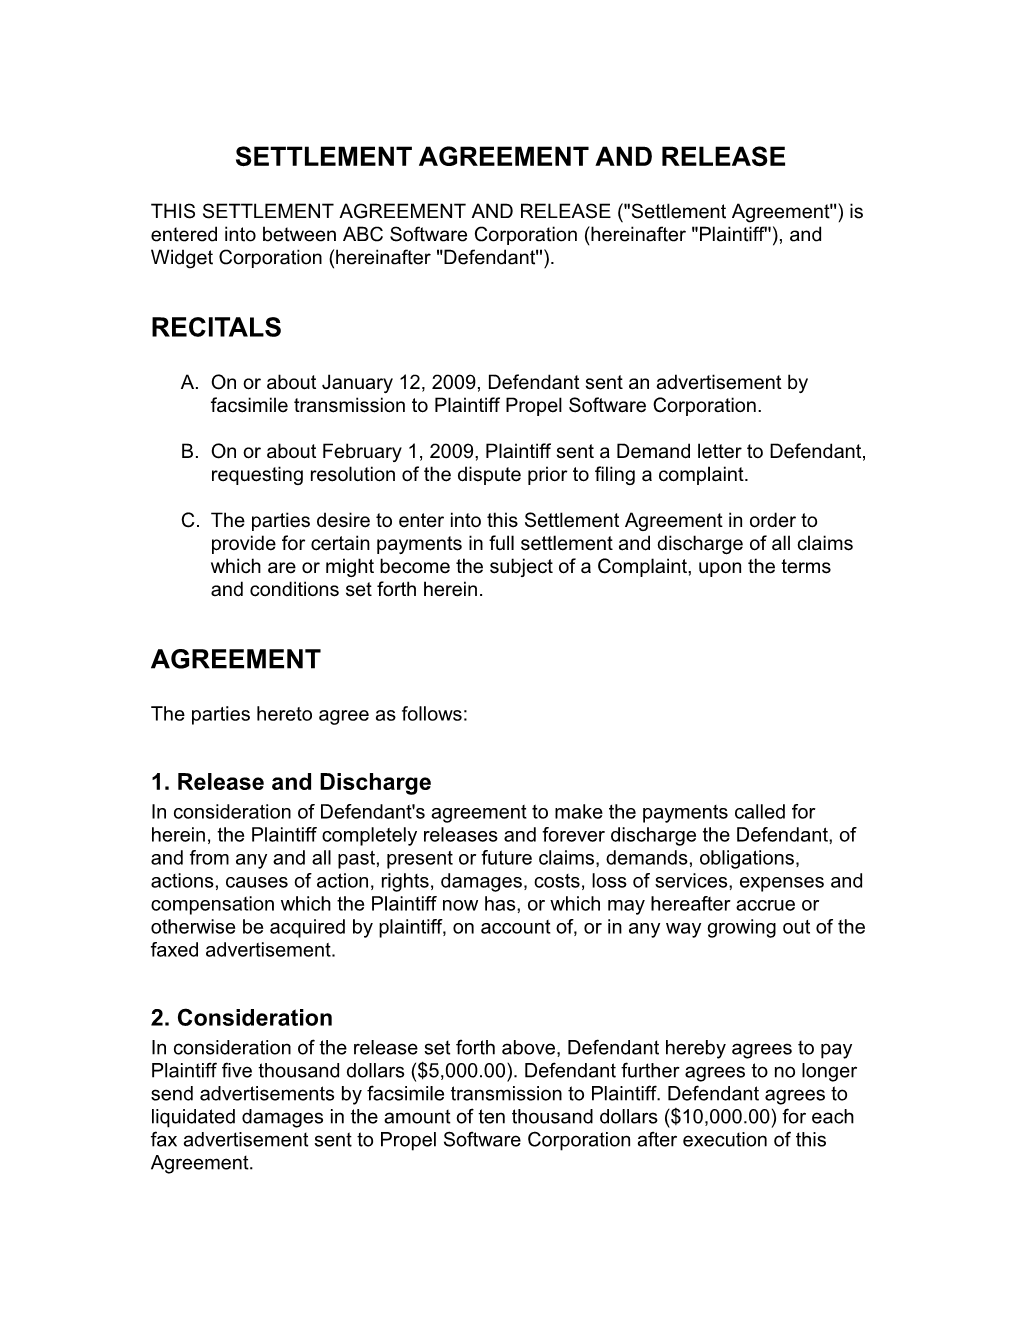 Sample Settlement Agreement